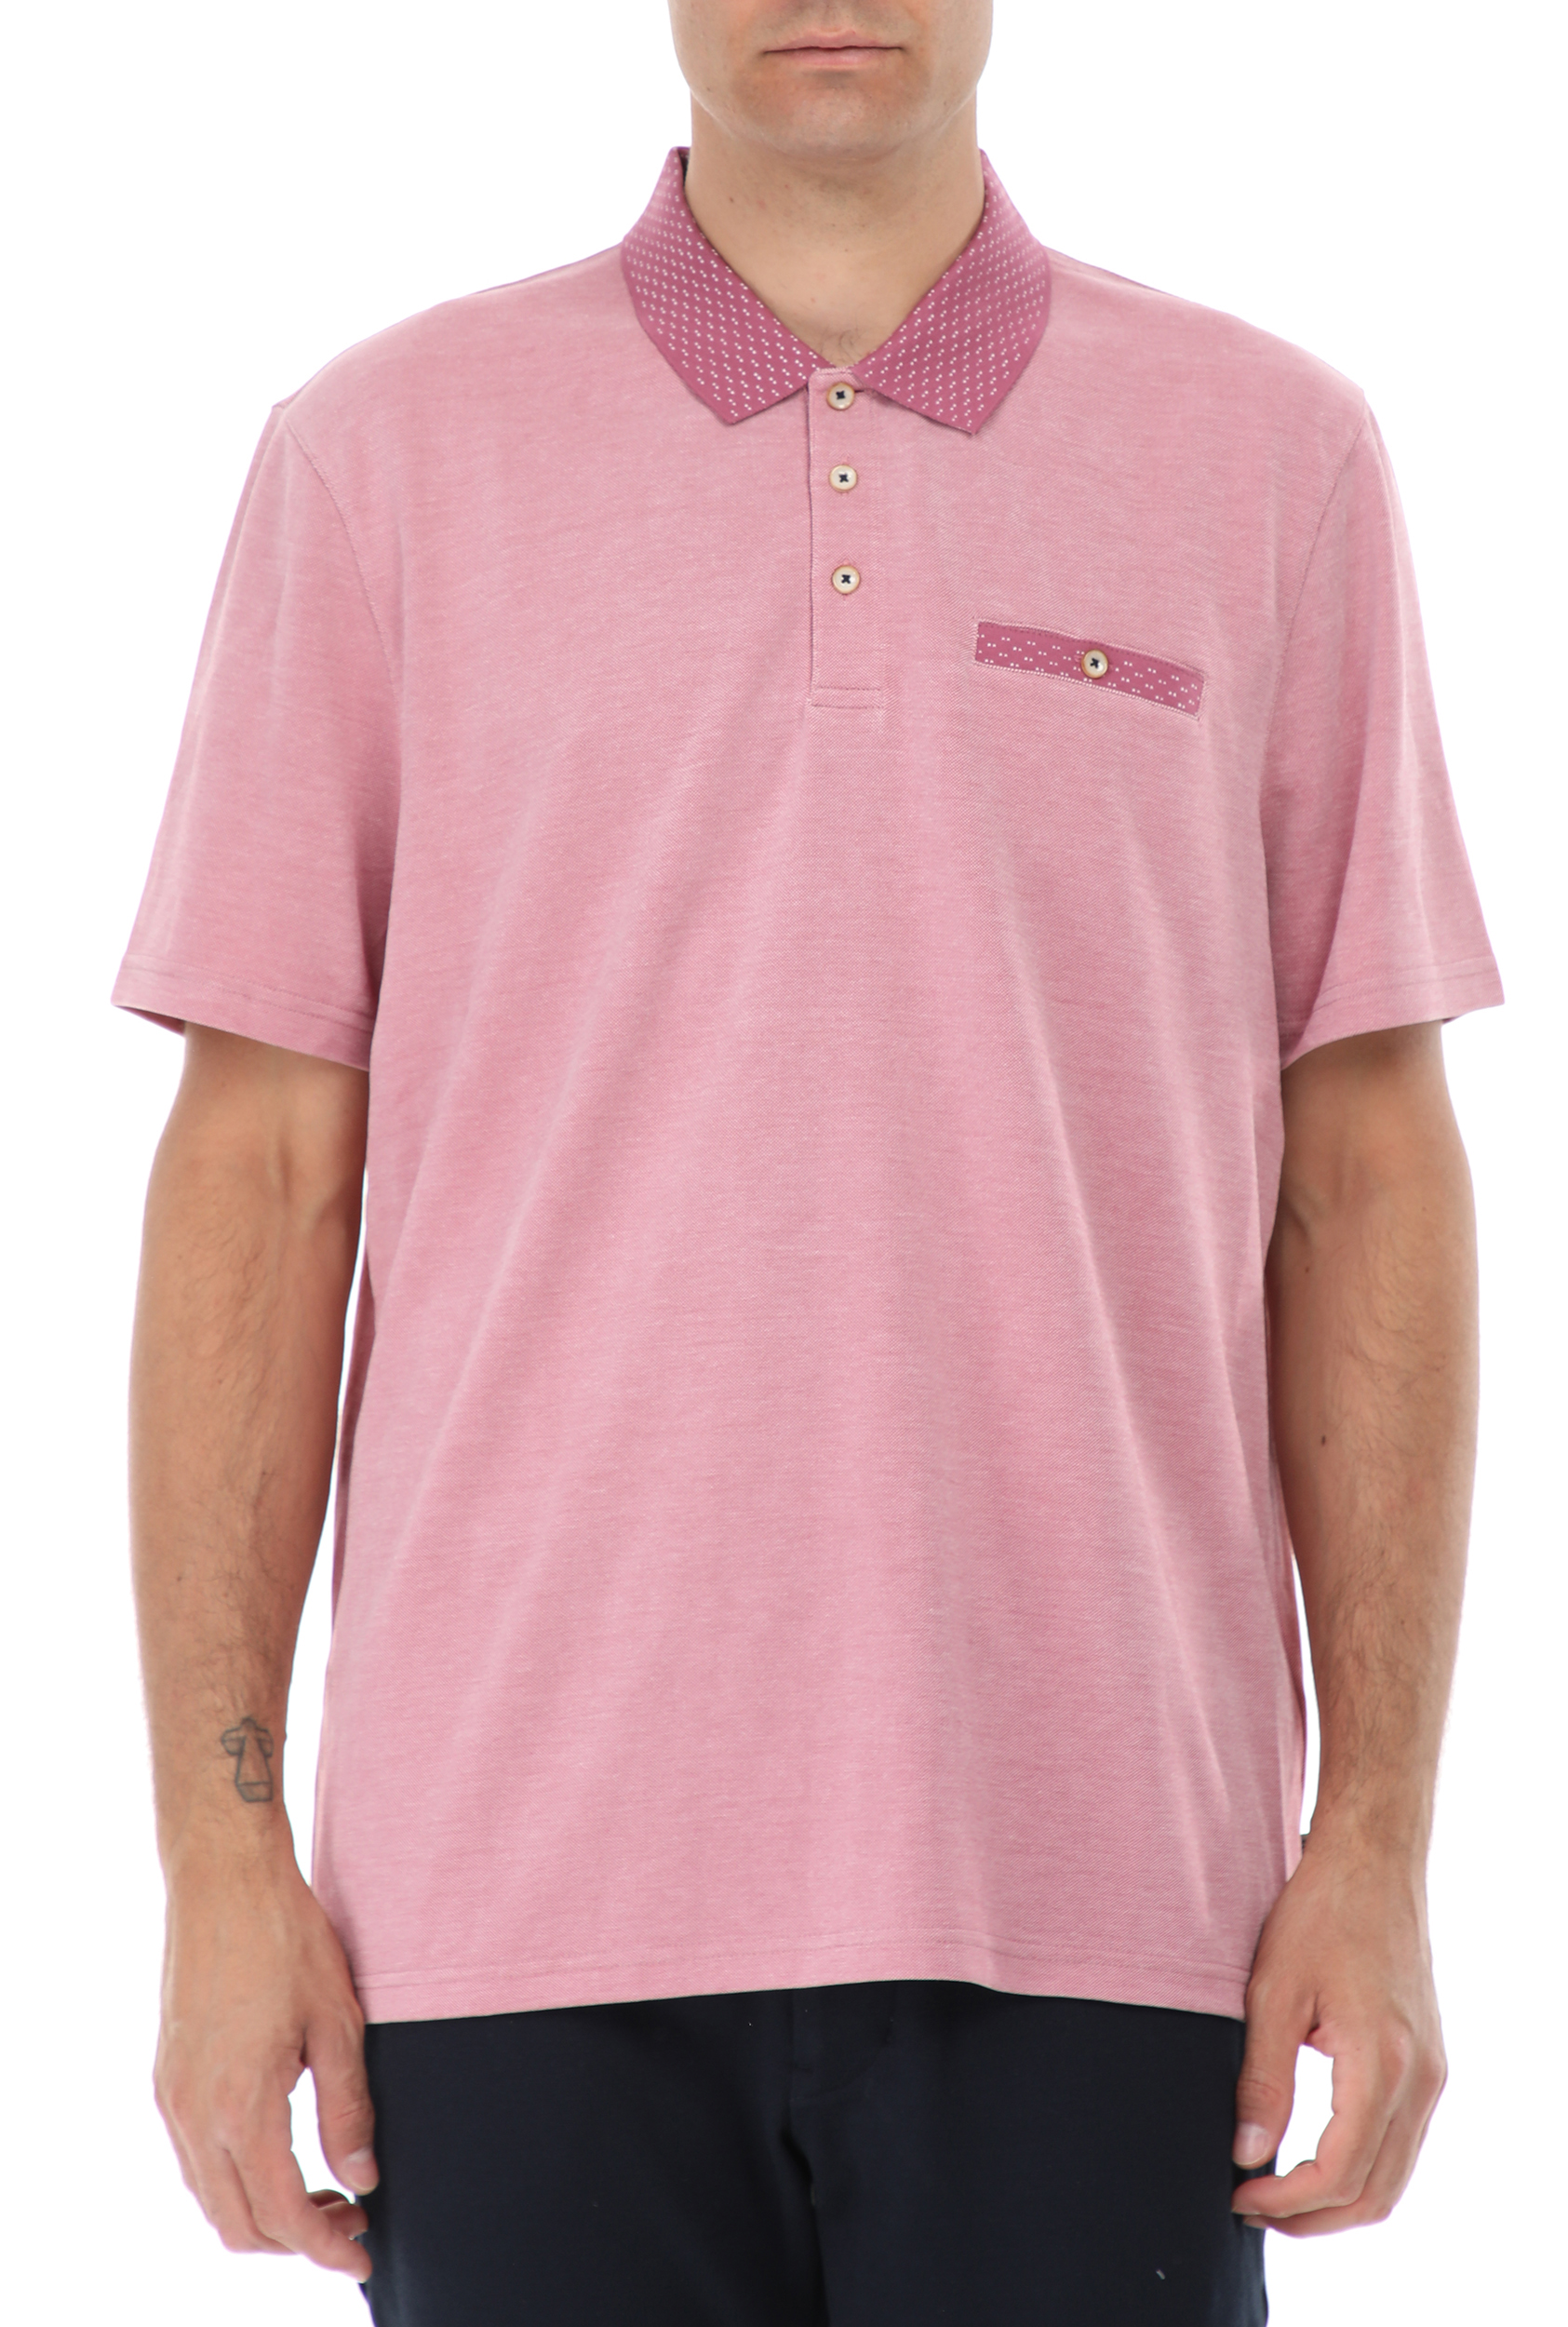 TED BAKER Ανδρική polo μπλούζα TED BAKER CAROSEL ροζ